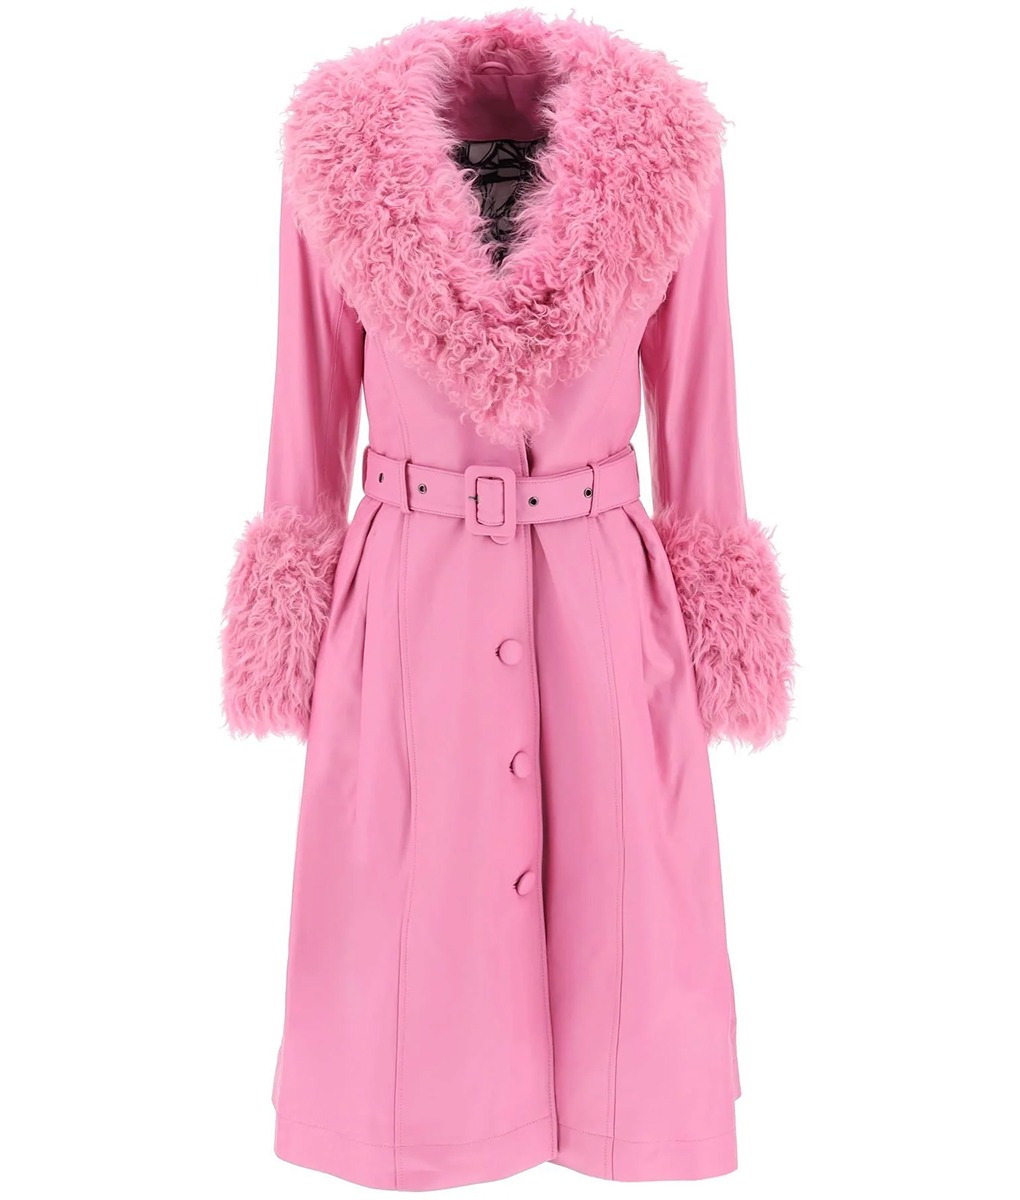 Elle King Nashville Big Bash Pink Fur Coat (1)